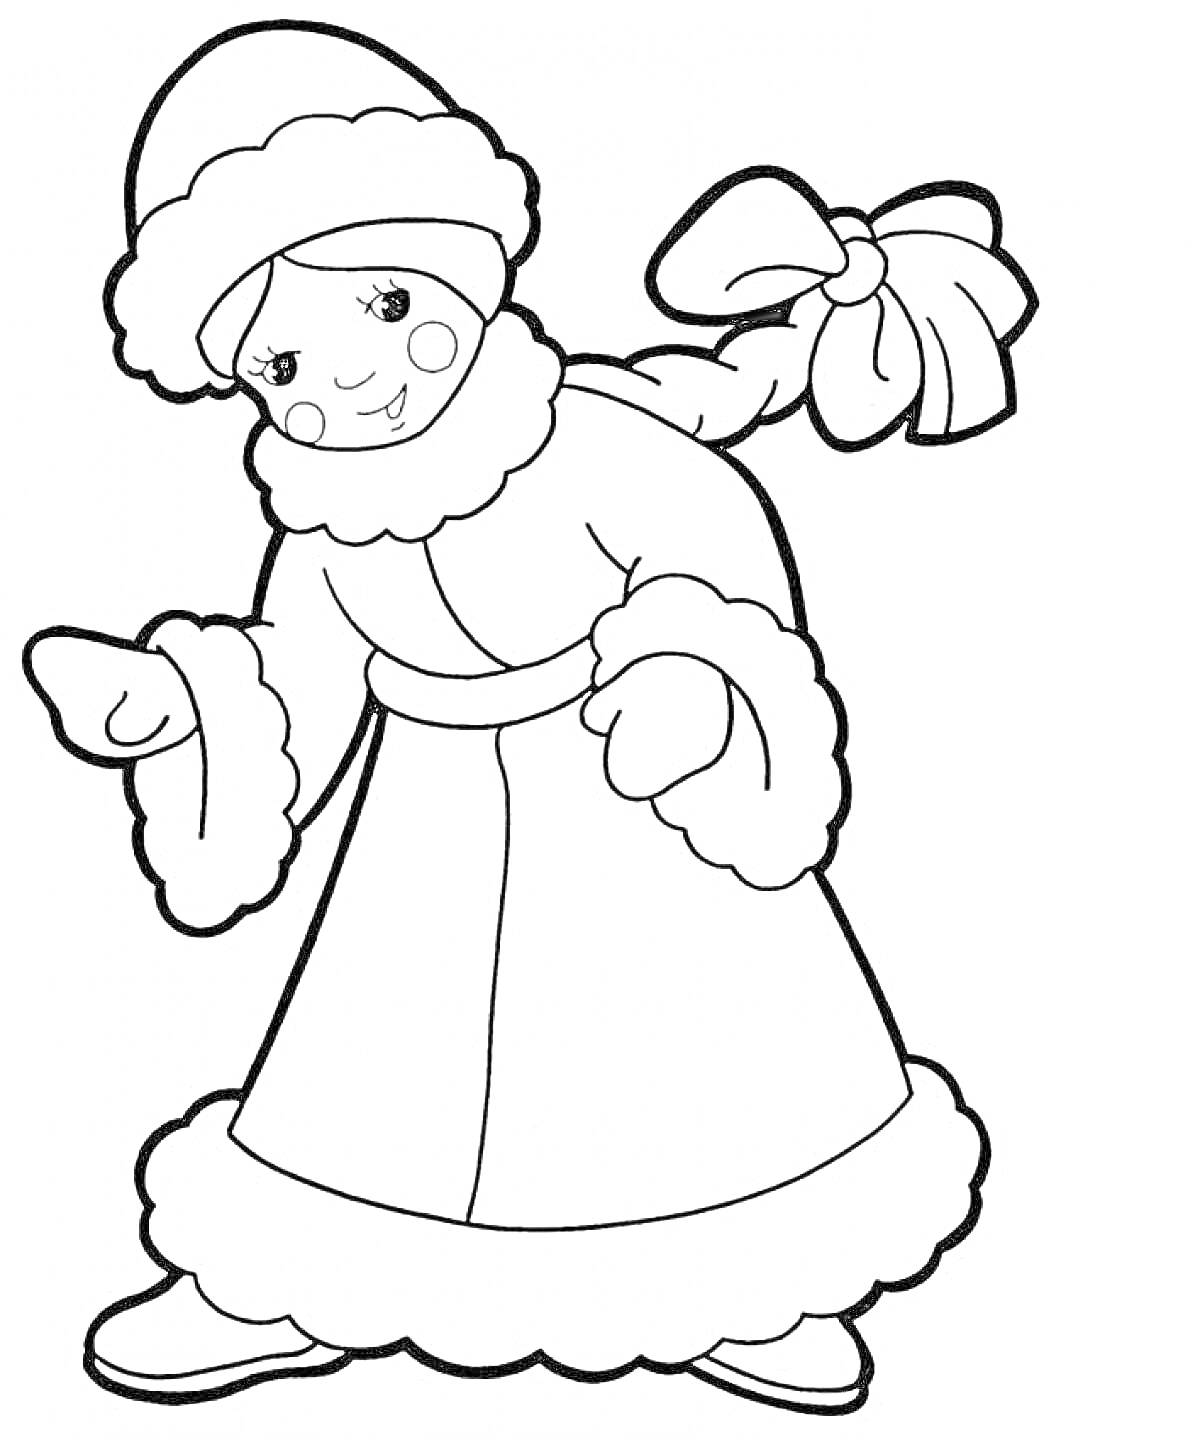 Раскраска Снегурочка в меховой шапке и длинной шубе с косой с бантом